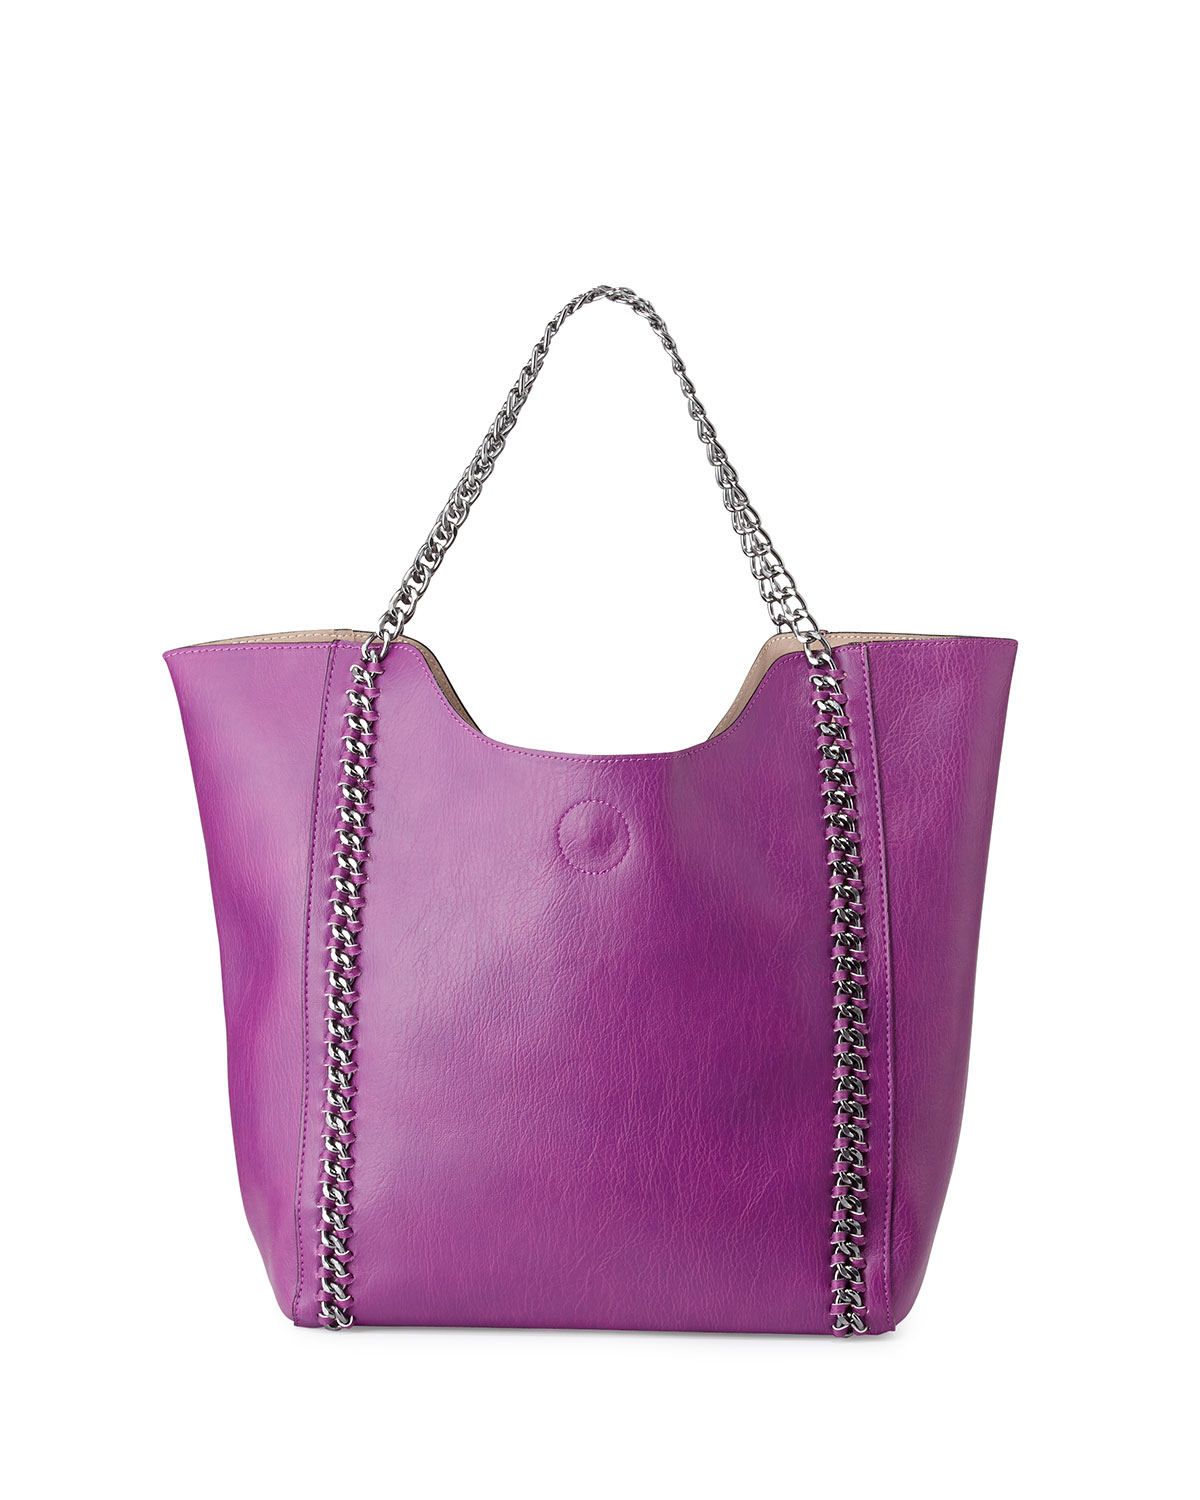 Lyst - Neiman Marcus Hanelli Chain-trim Tote Bag in Purple